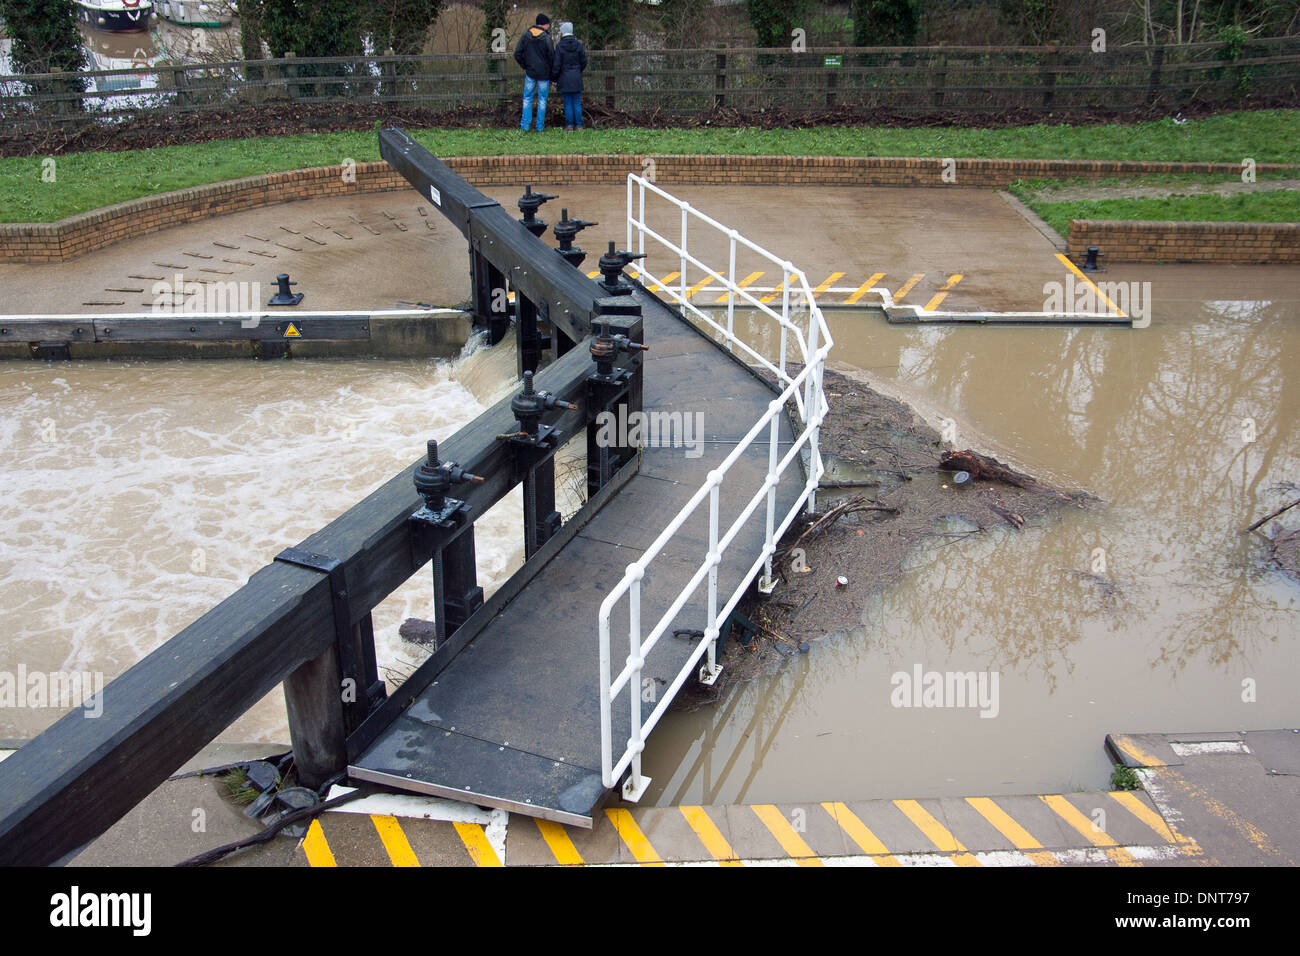 River Medway Flooding Kent England UK Europe Stock Photo